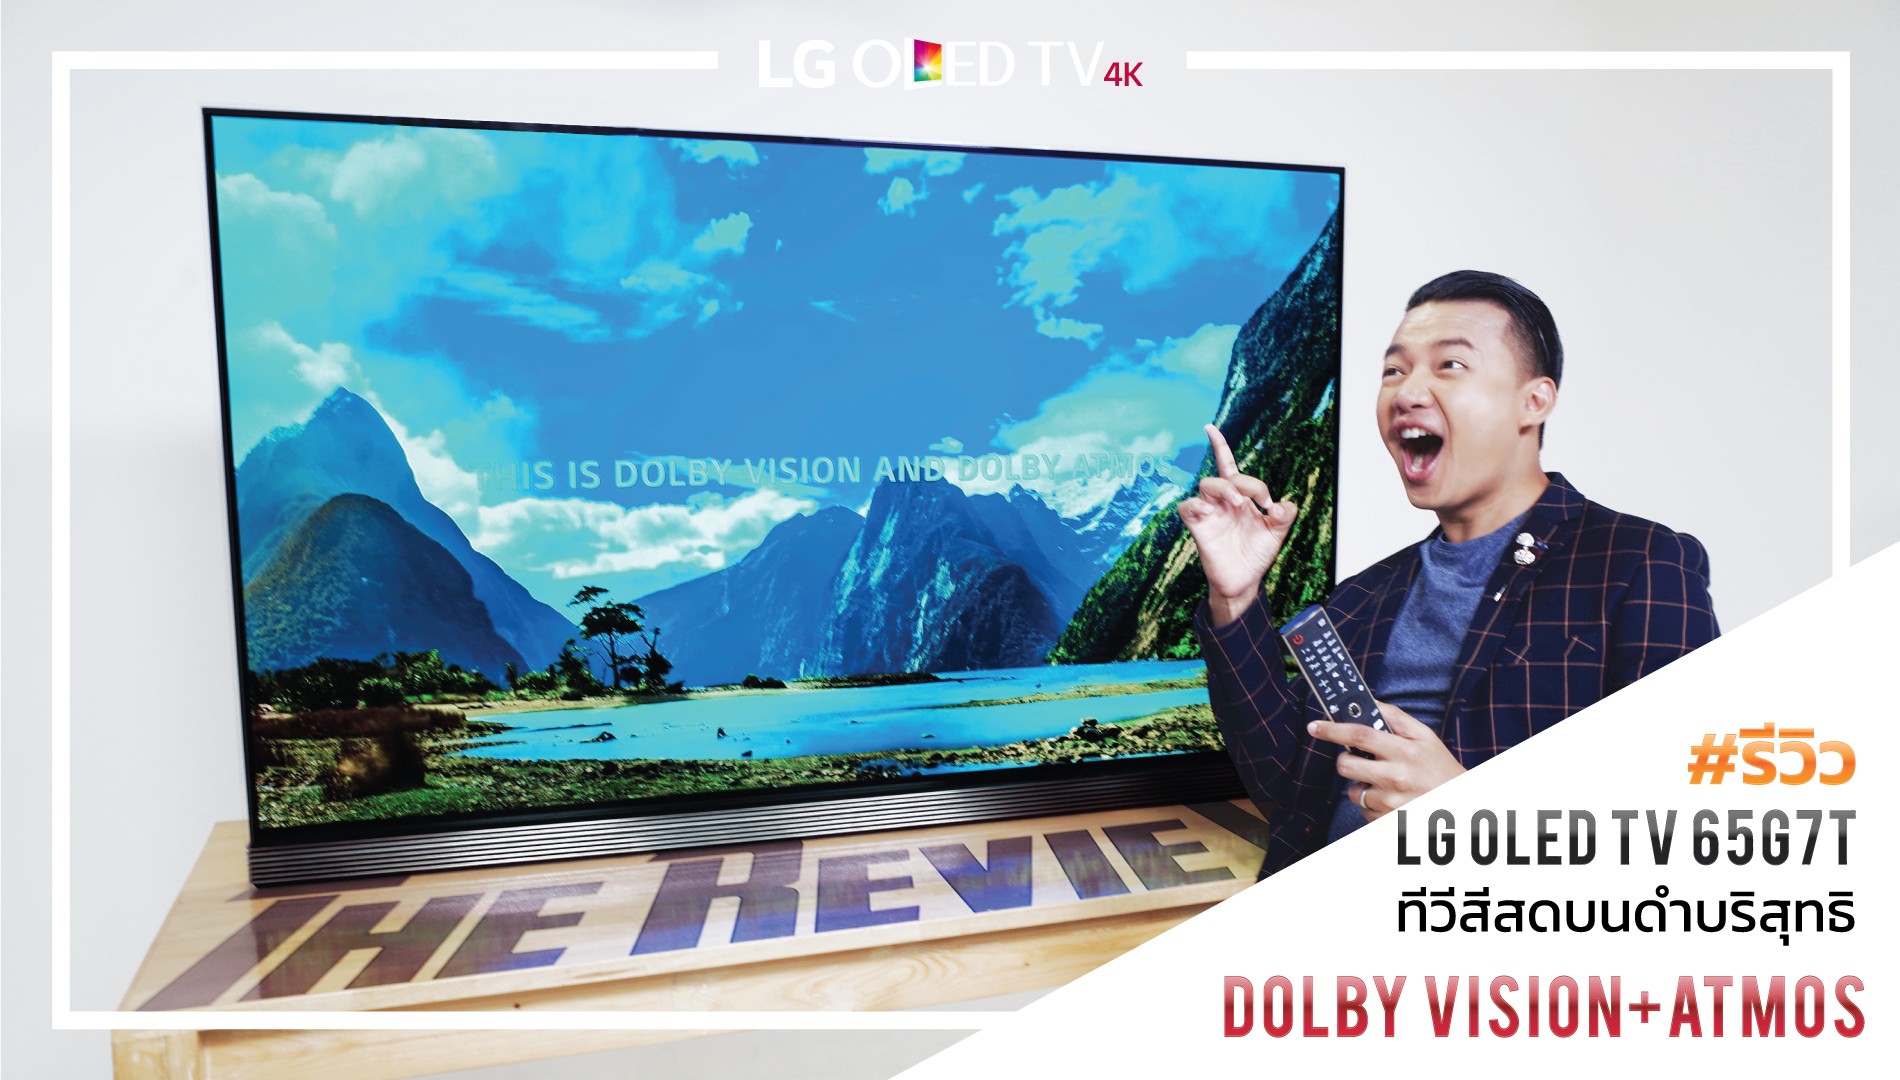 รีวิว LG OLED TV 65G7T ทีวี 4K สีสดบนจอดำบริสุทธิ์ พร้อม Dolby Vision + Atmos